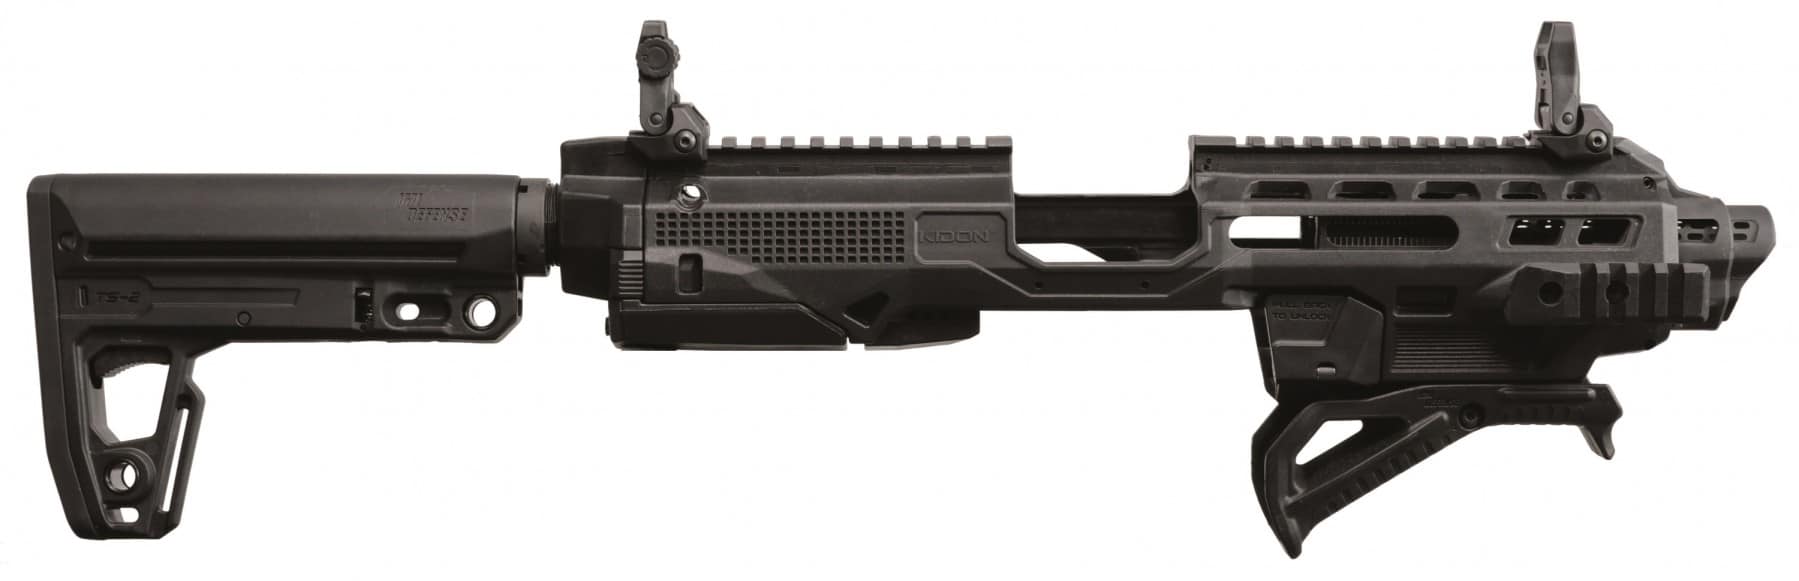 96 A1 Pistol, Beretta